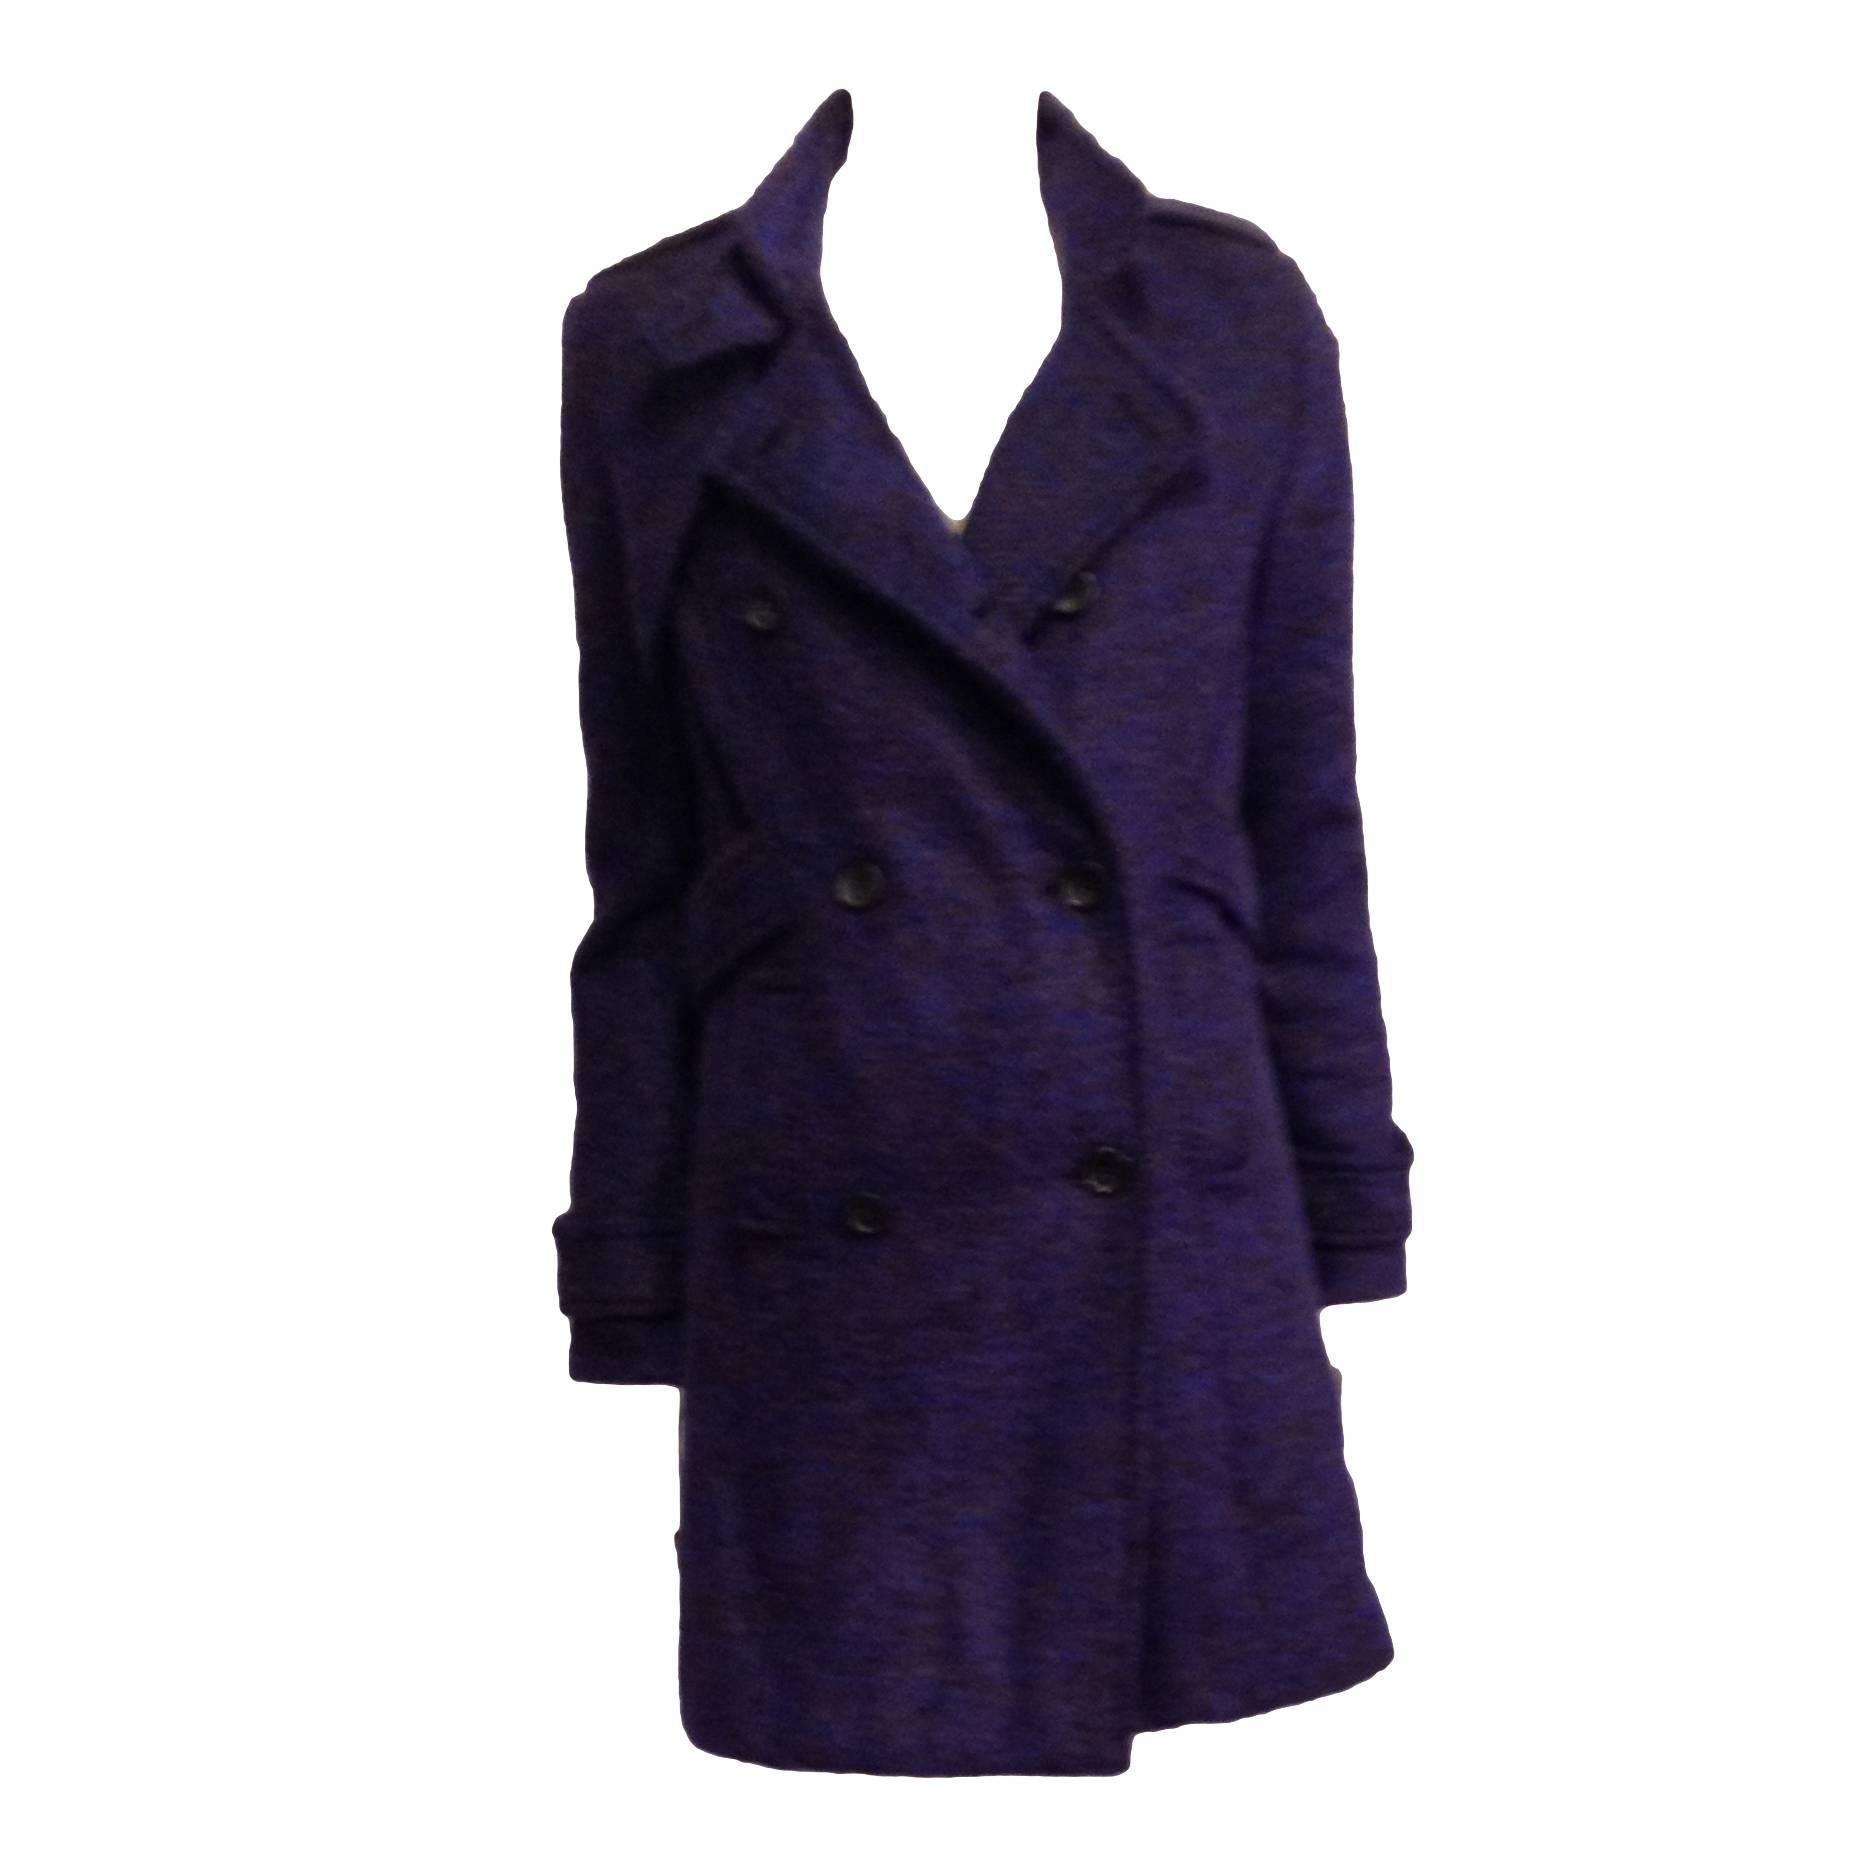 Proenza Schouler Royal Purple Tweed Coat Size 4